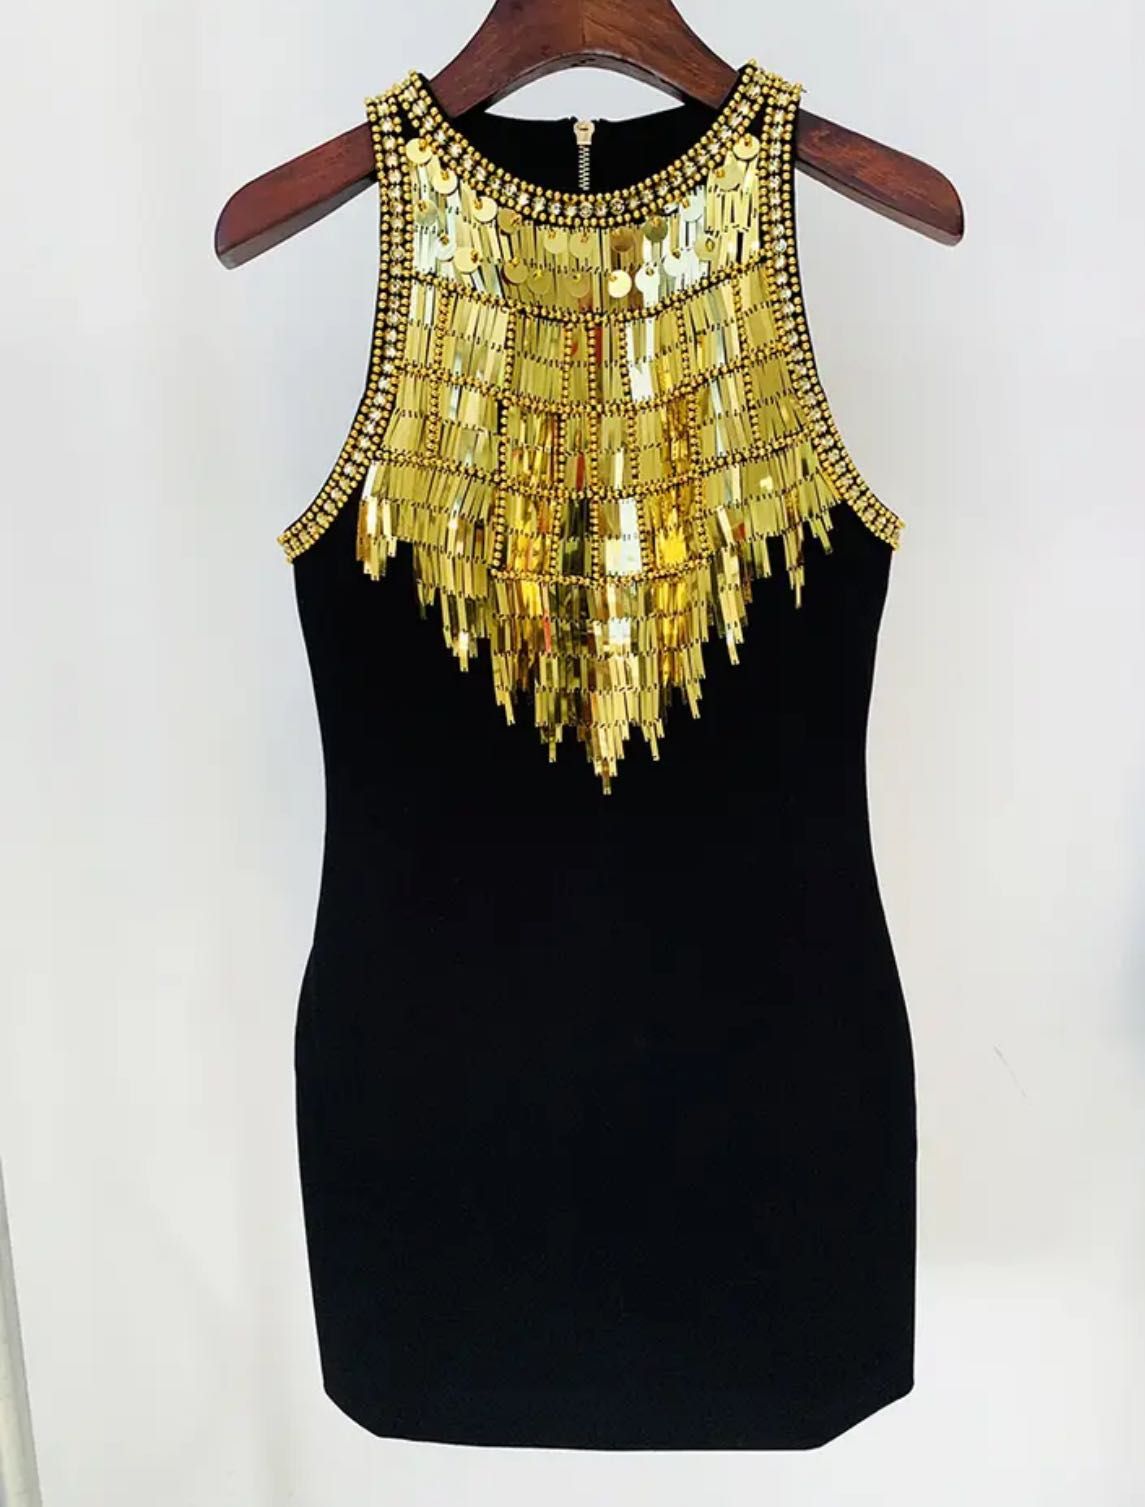 Черна рокля със златни мъниста камъни декорации